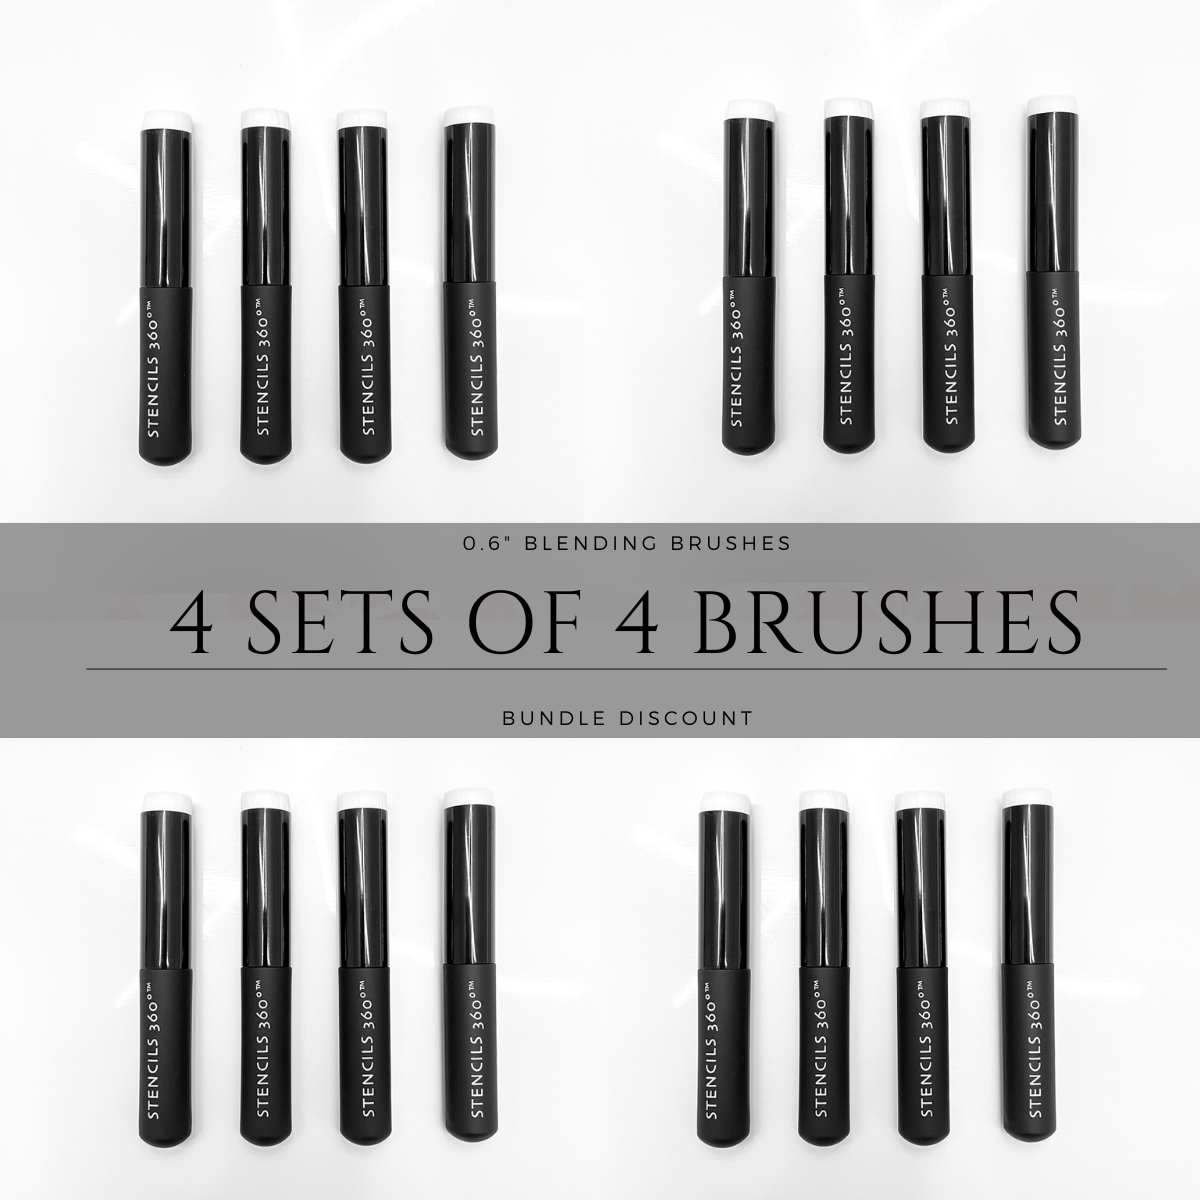 0.6" Blending Brush Bundle (4 Sets of 4 Brushes)